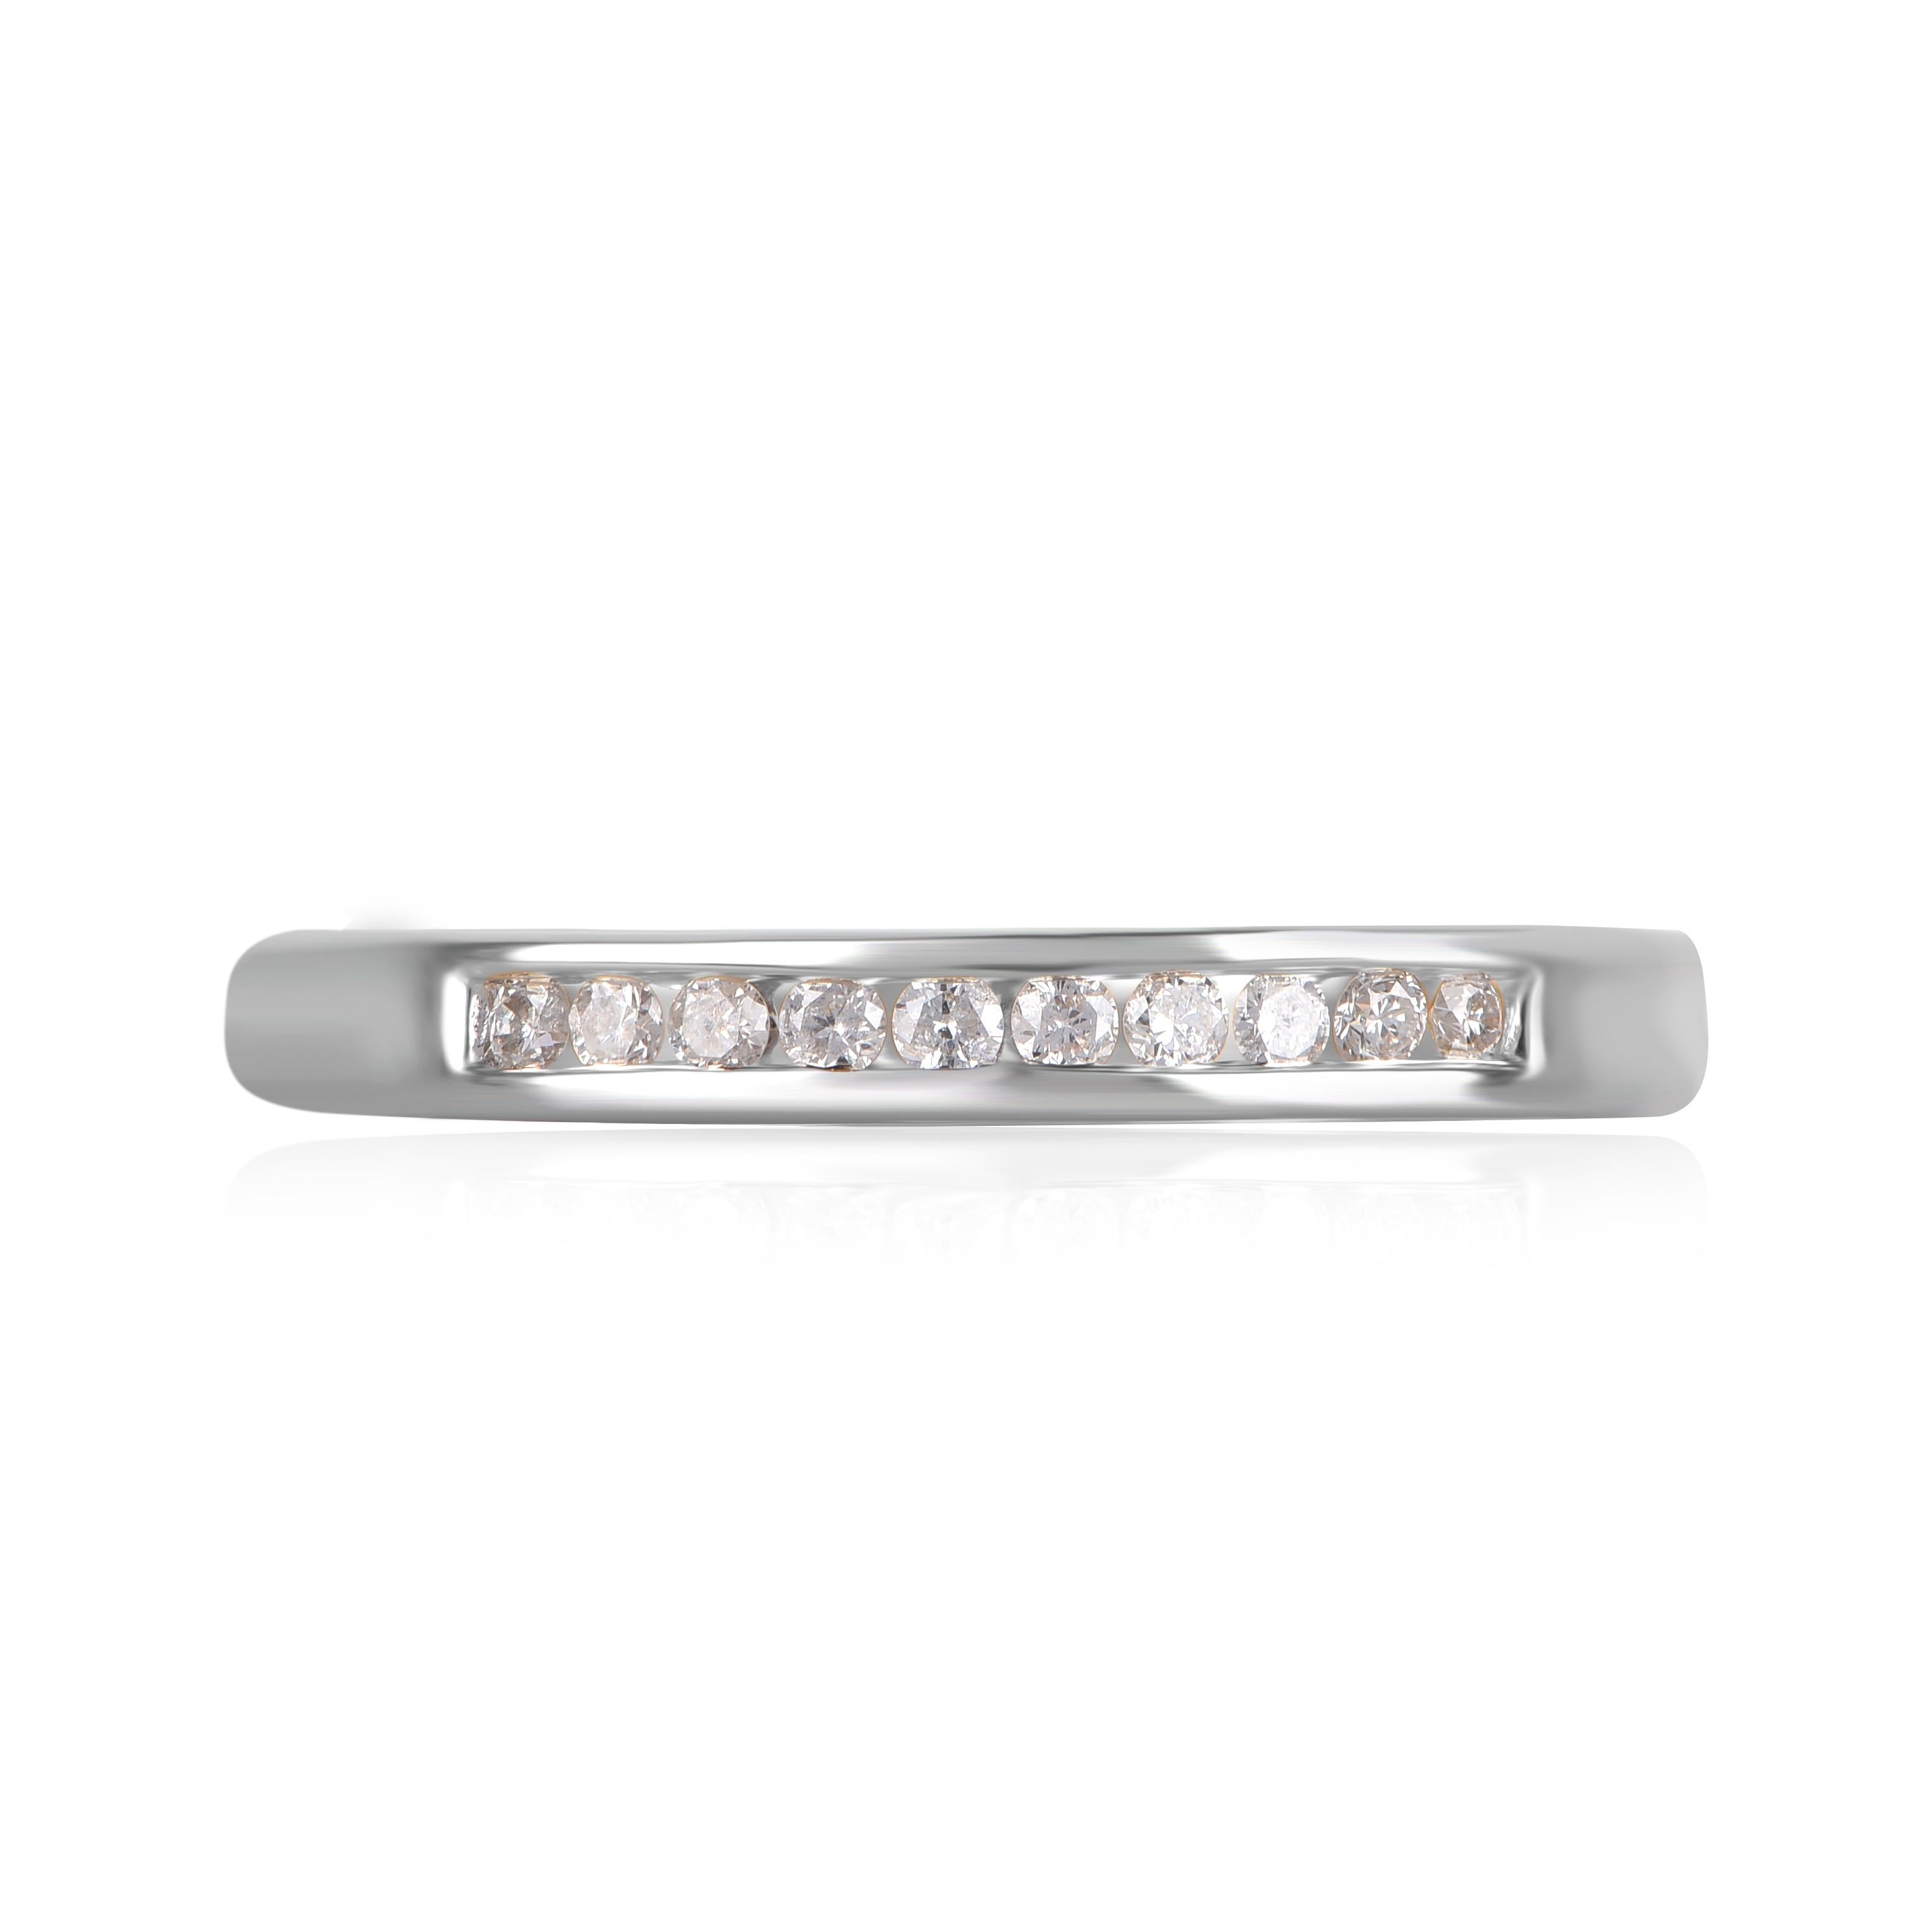 Bringen Sie Charme in Ihren Look mit diesem diamantenen Ehering. Dieser Ring ist wunderschön aus 14 Karat Weißgold gefertigt und mit 10 natürlichen Diamanten im Brillantschliff in Kanalfassung besetzt. Das Gesamtgewicht der Diamanten beträgt 0,15